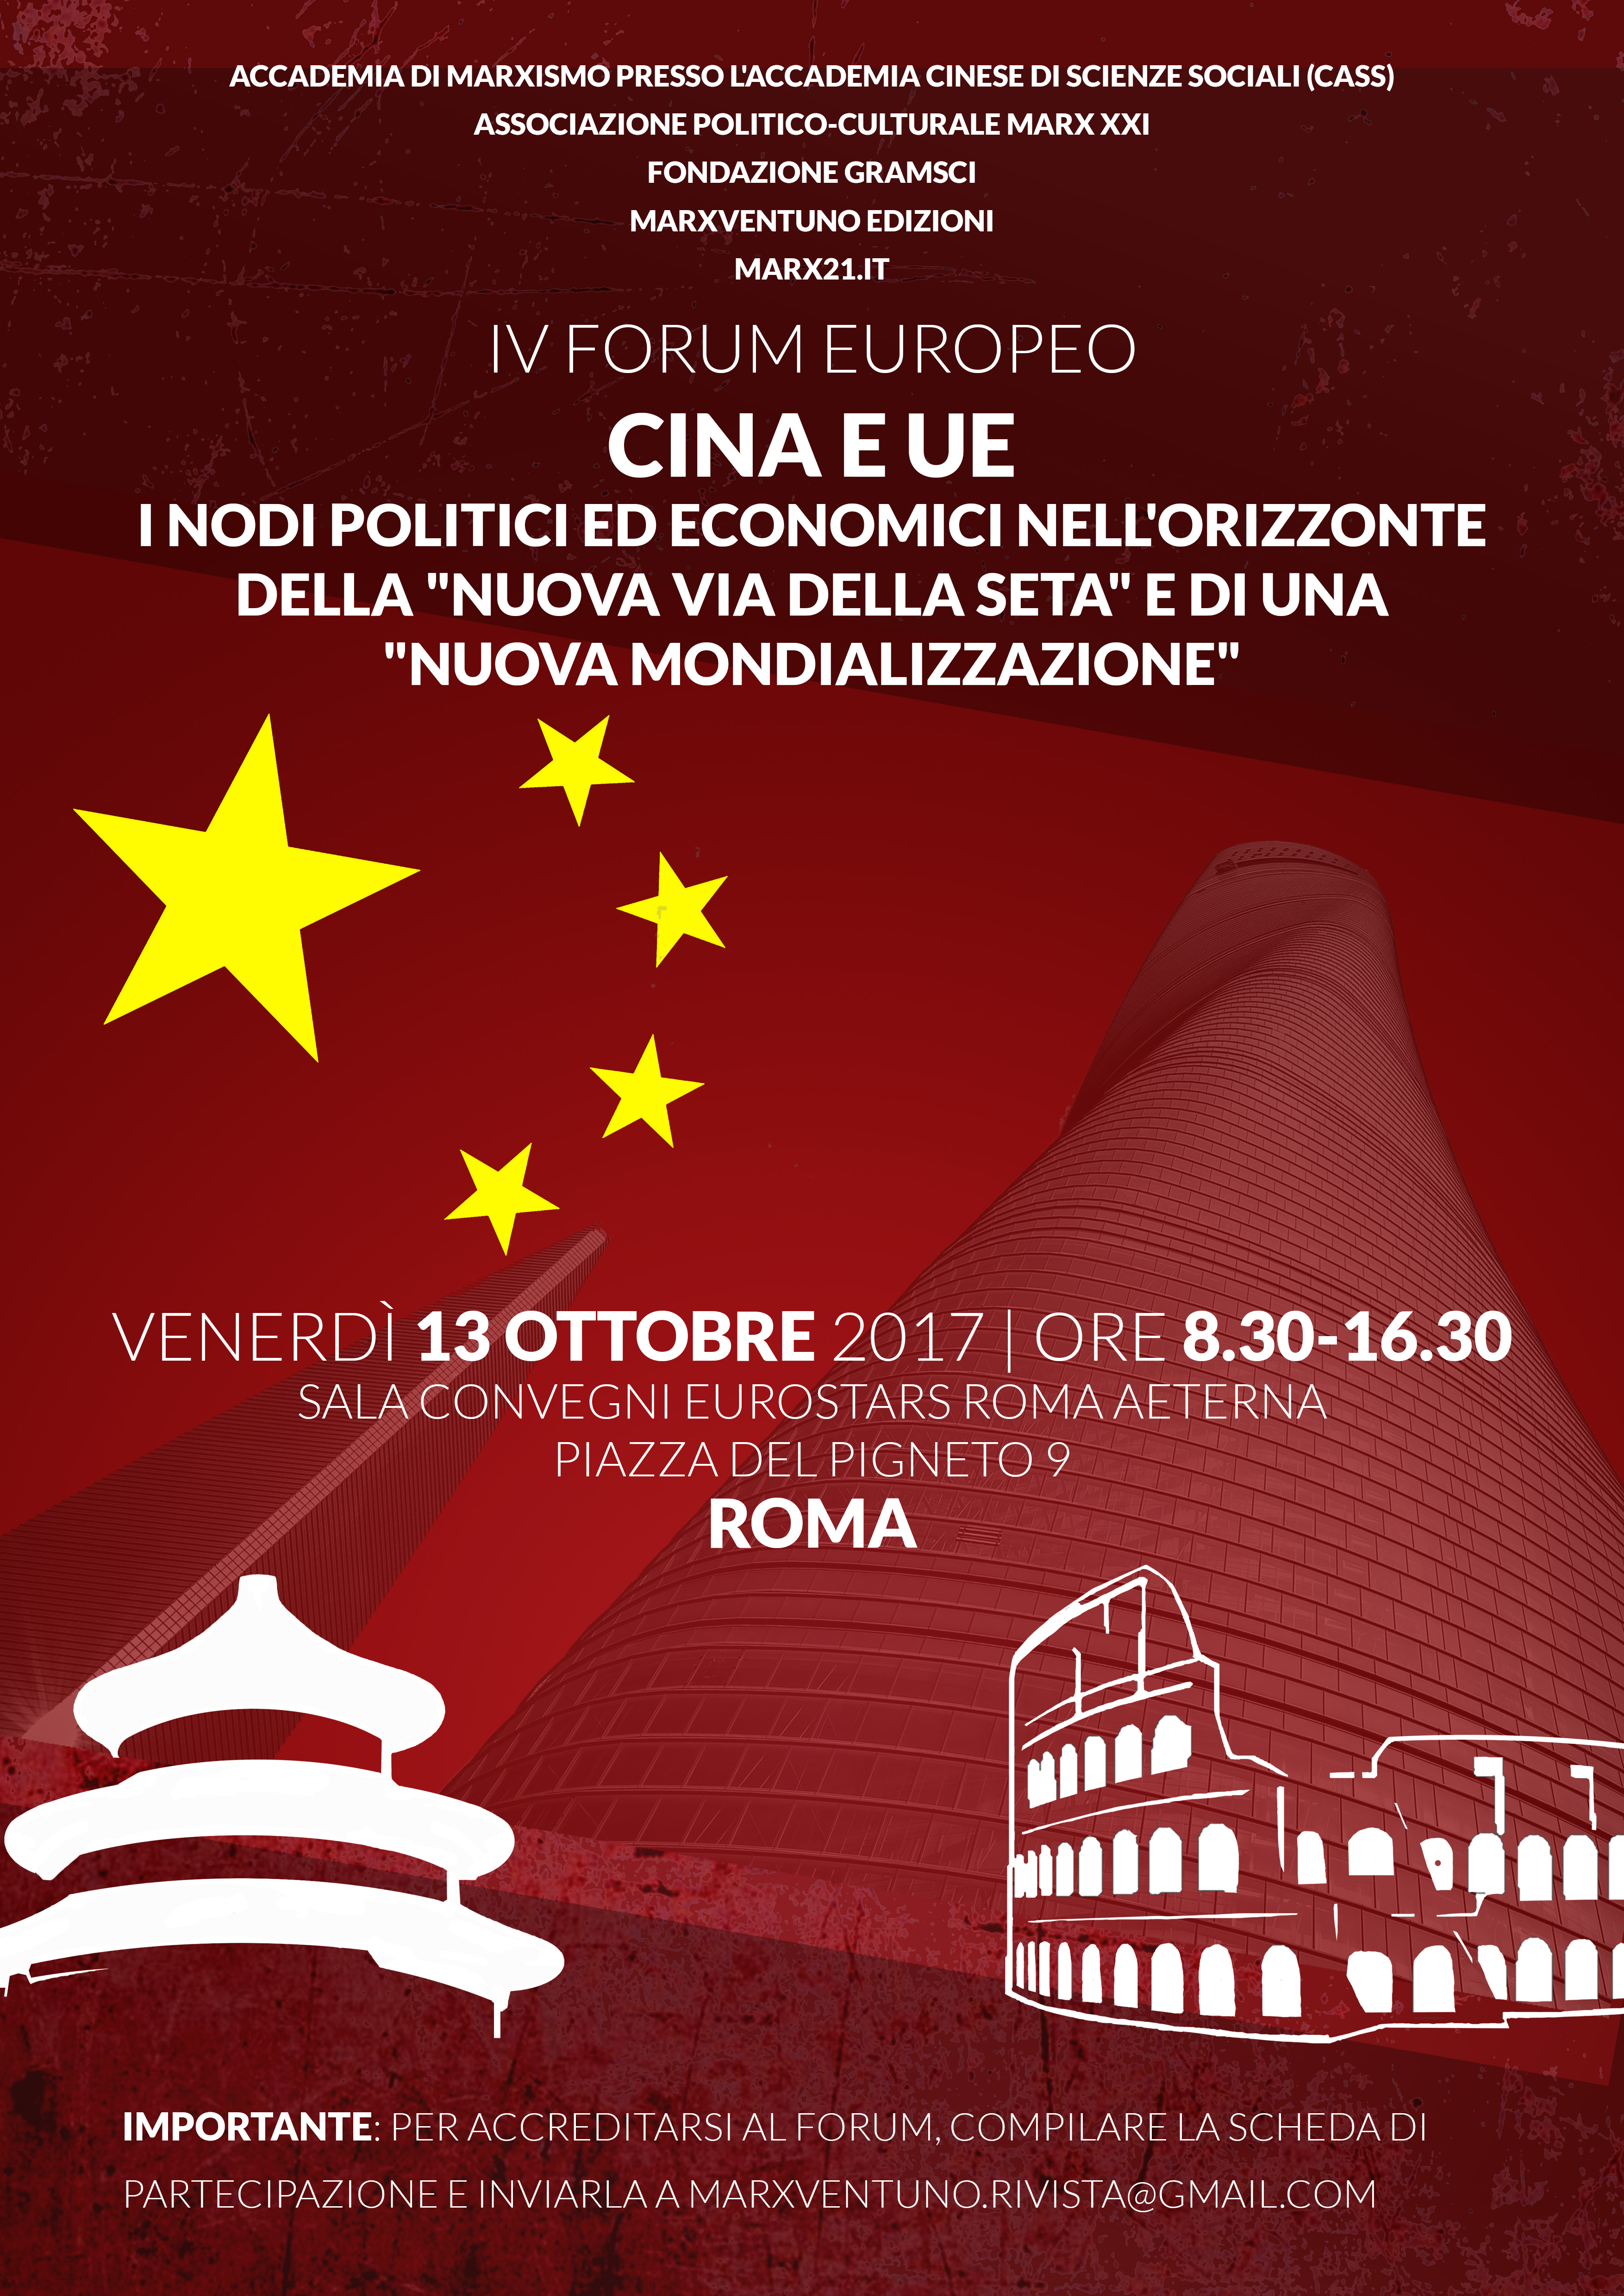 #SaveTheDate - Roma (13.10.2017) - IV Forum europeo CINA e UE